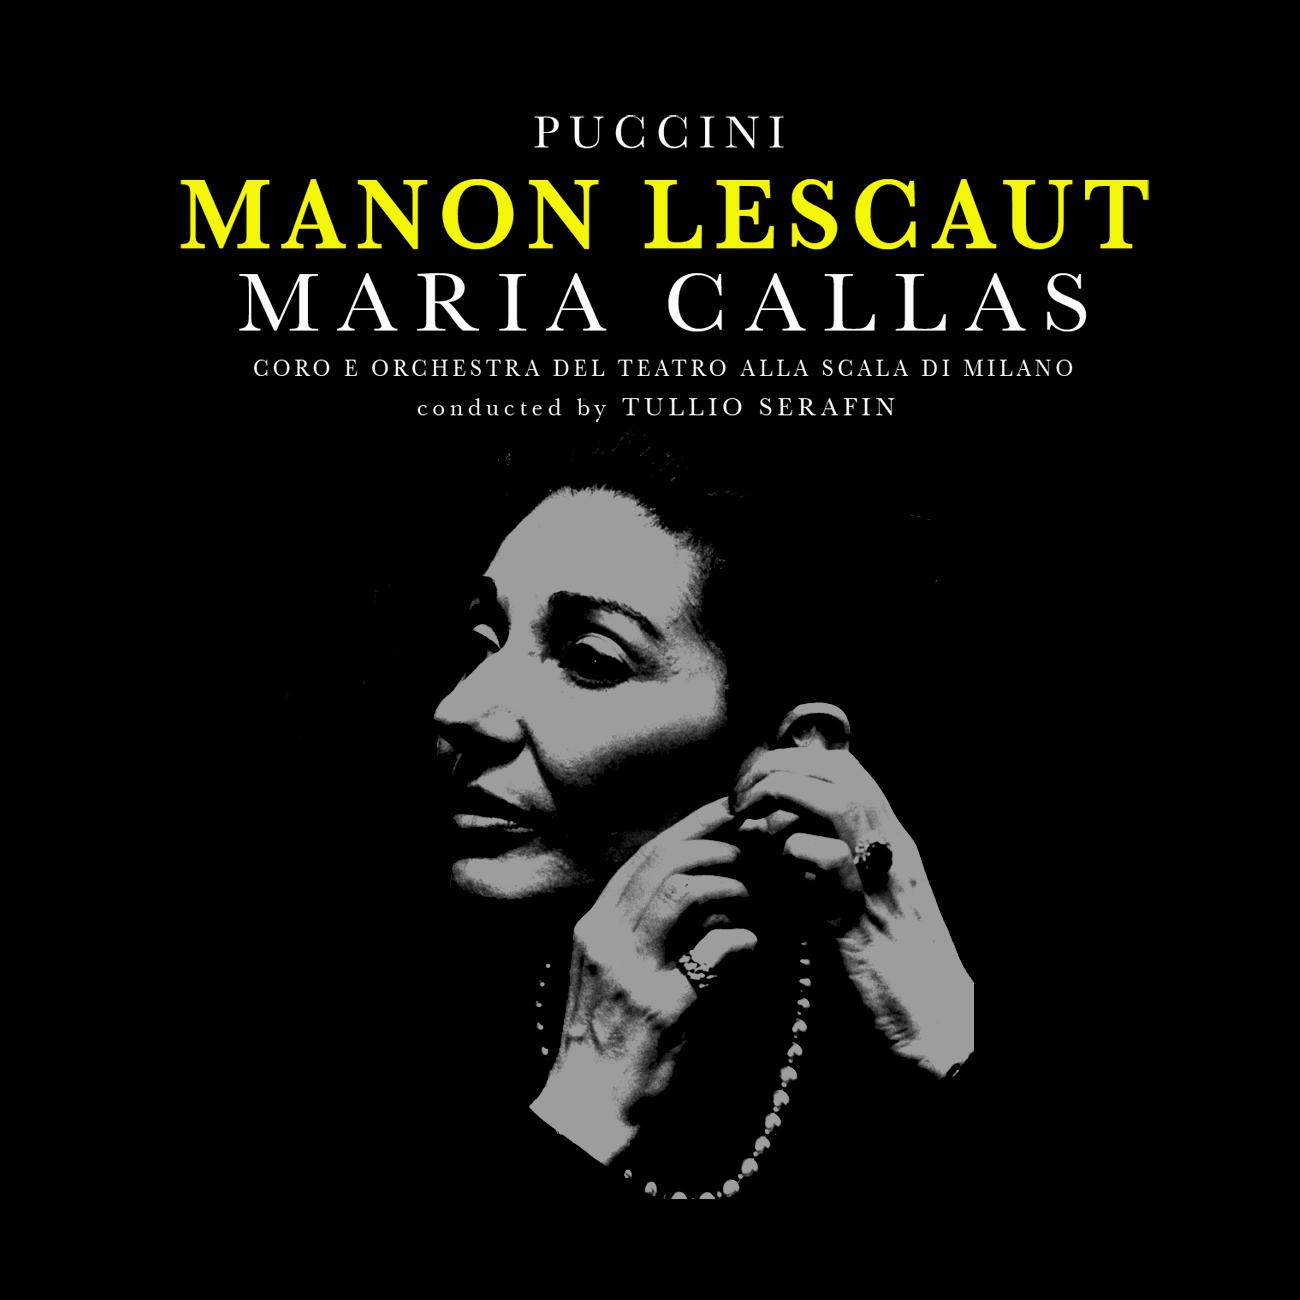 Puccini: Manon Lescaut "Complete Opera" (Remastered)